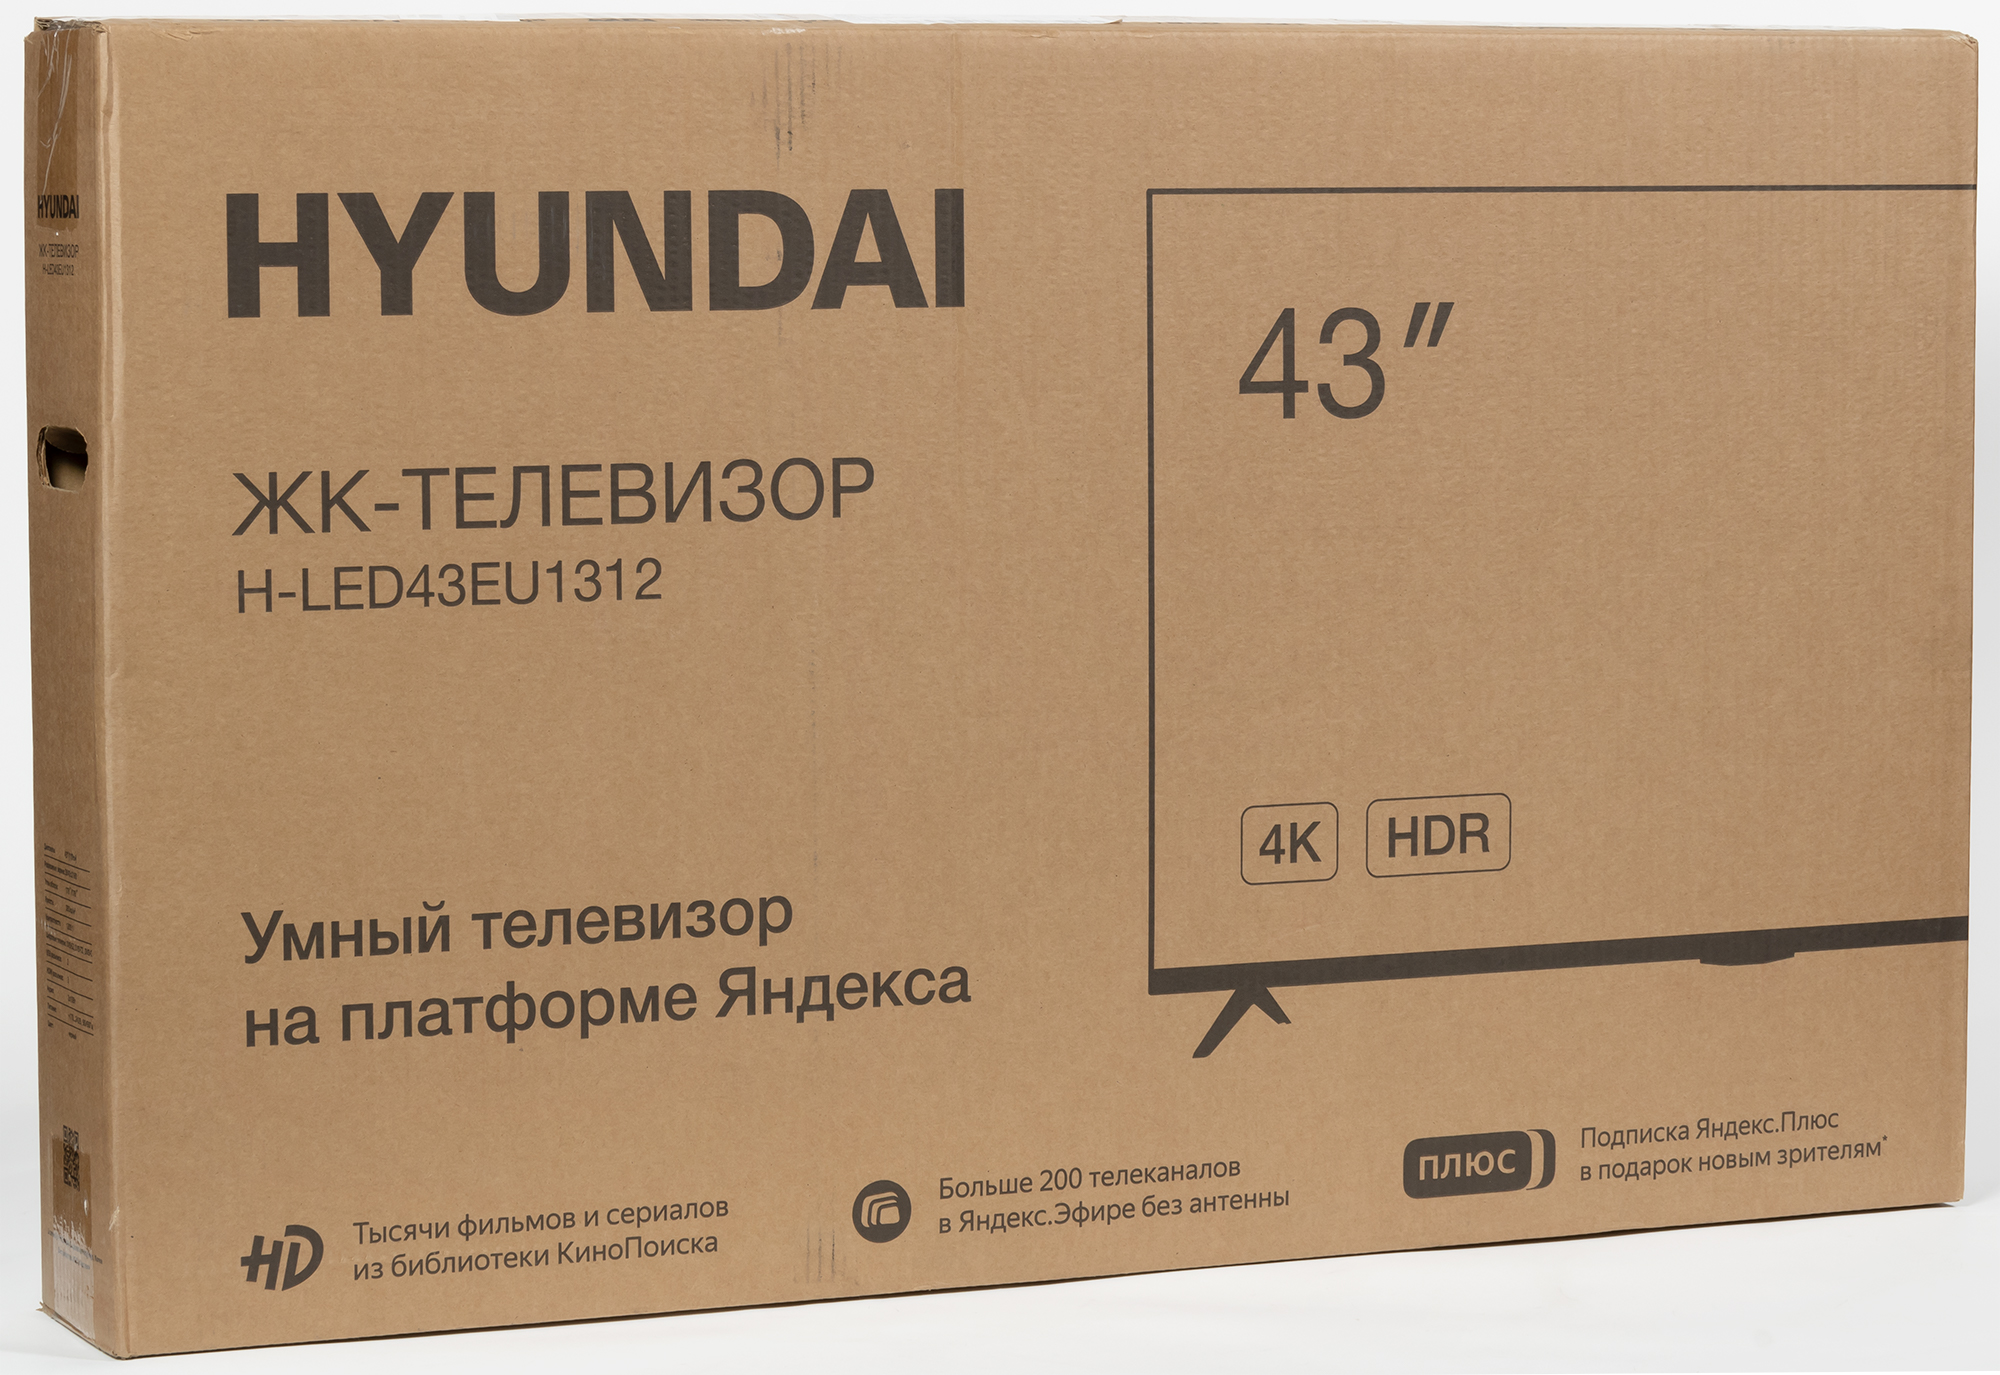 Led43bu7003 телевизор hyundai